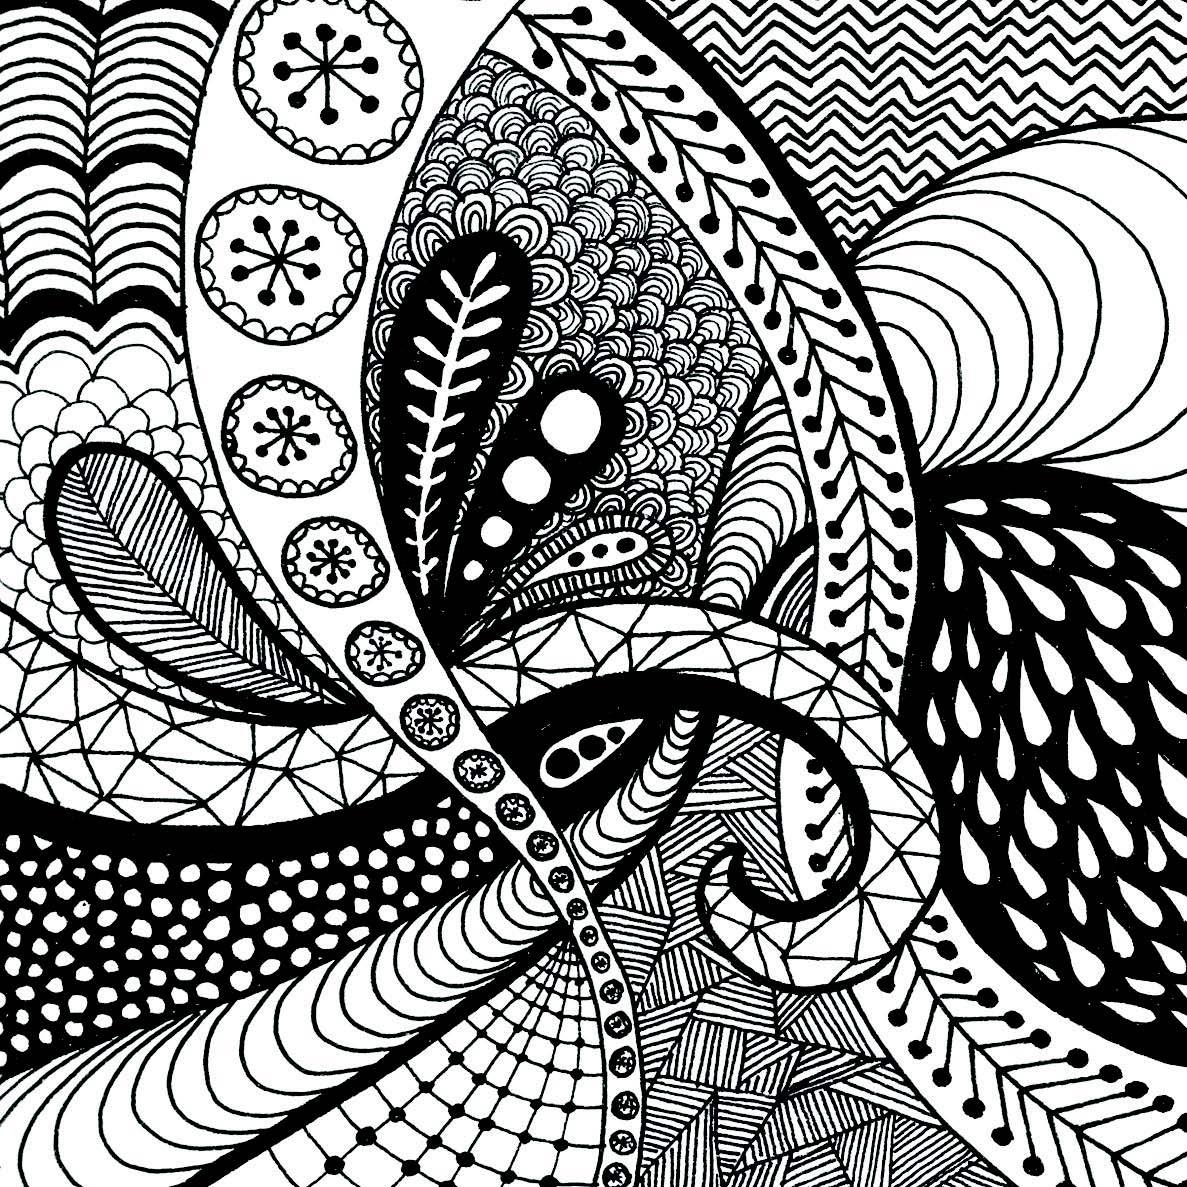 hoontoidly Simple Tumblr Drawings Patterns Images